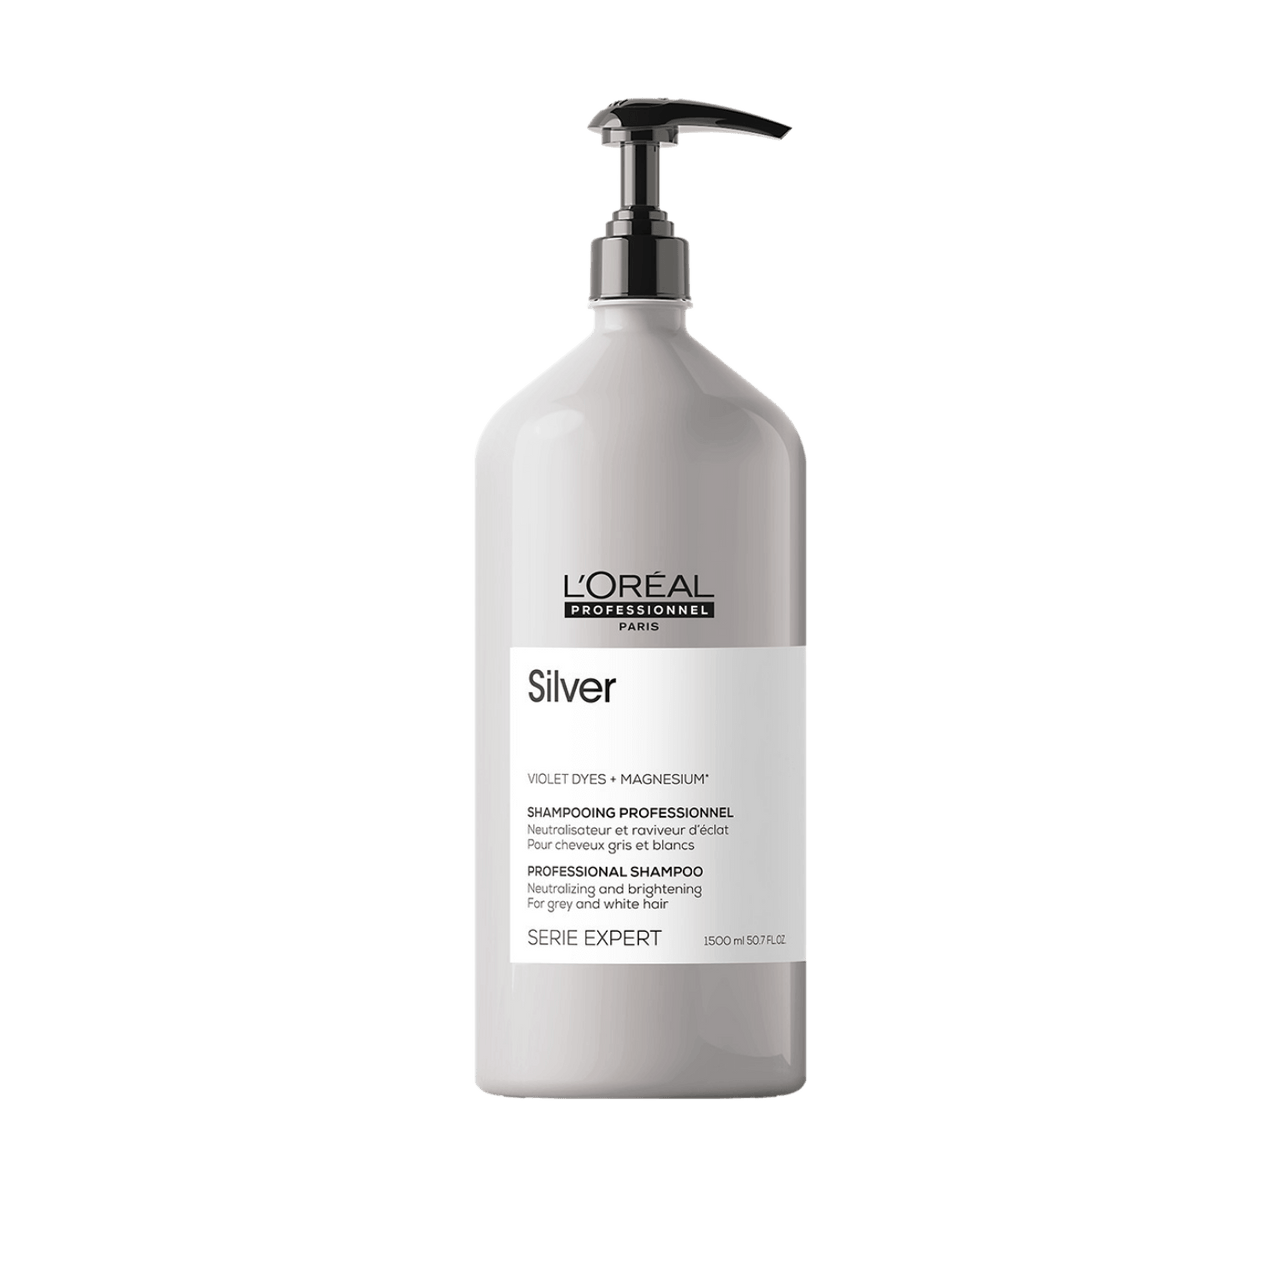 L'Oréal Professionnel Silver Shampoo 1500mL